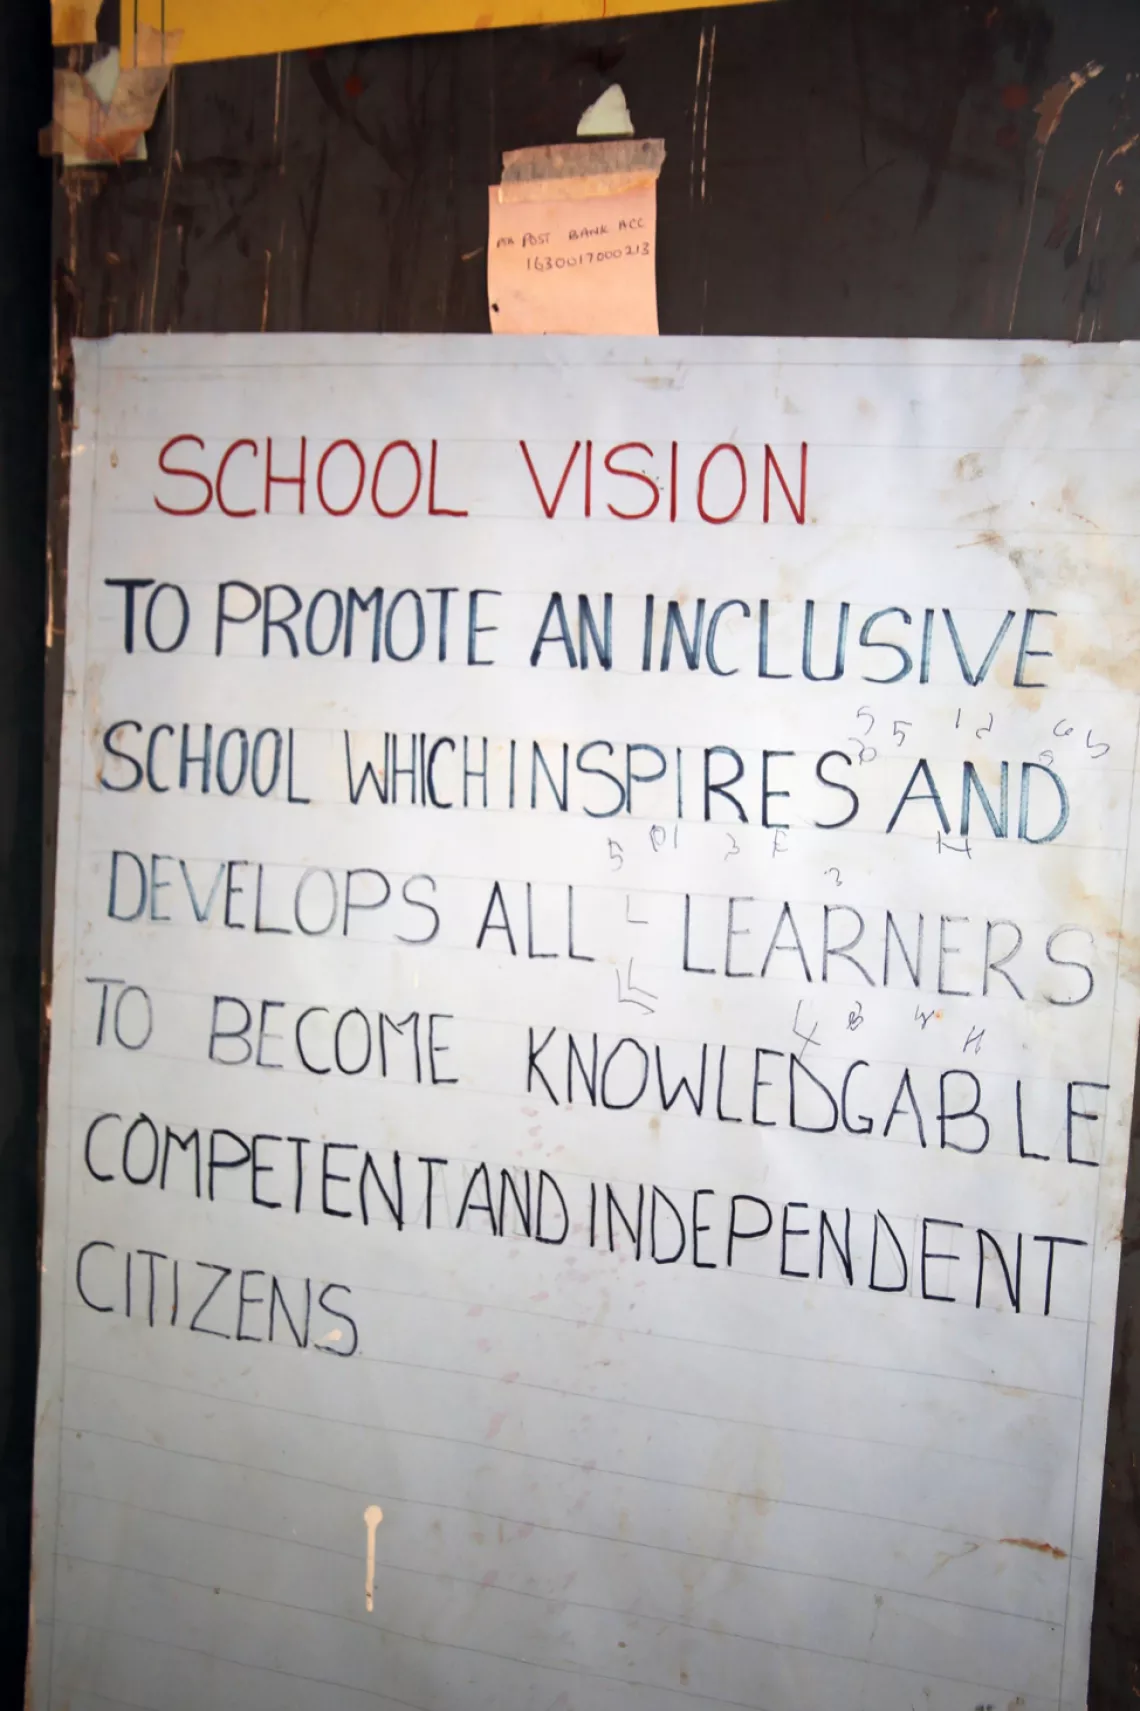 La visión de la escuela Kamurasi: promover una escuela inclusiva, que sea fuente de inspiración y desarrollo para que todas y todos los estudiantes tengan conocimientos y sean ciudadanos competentes e independientes.